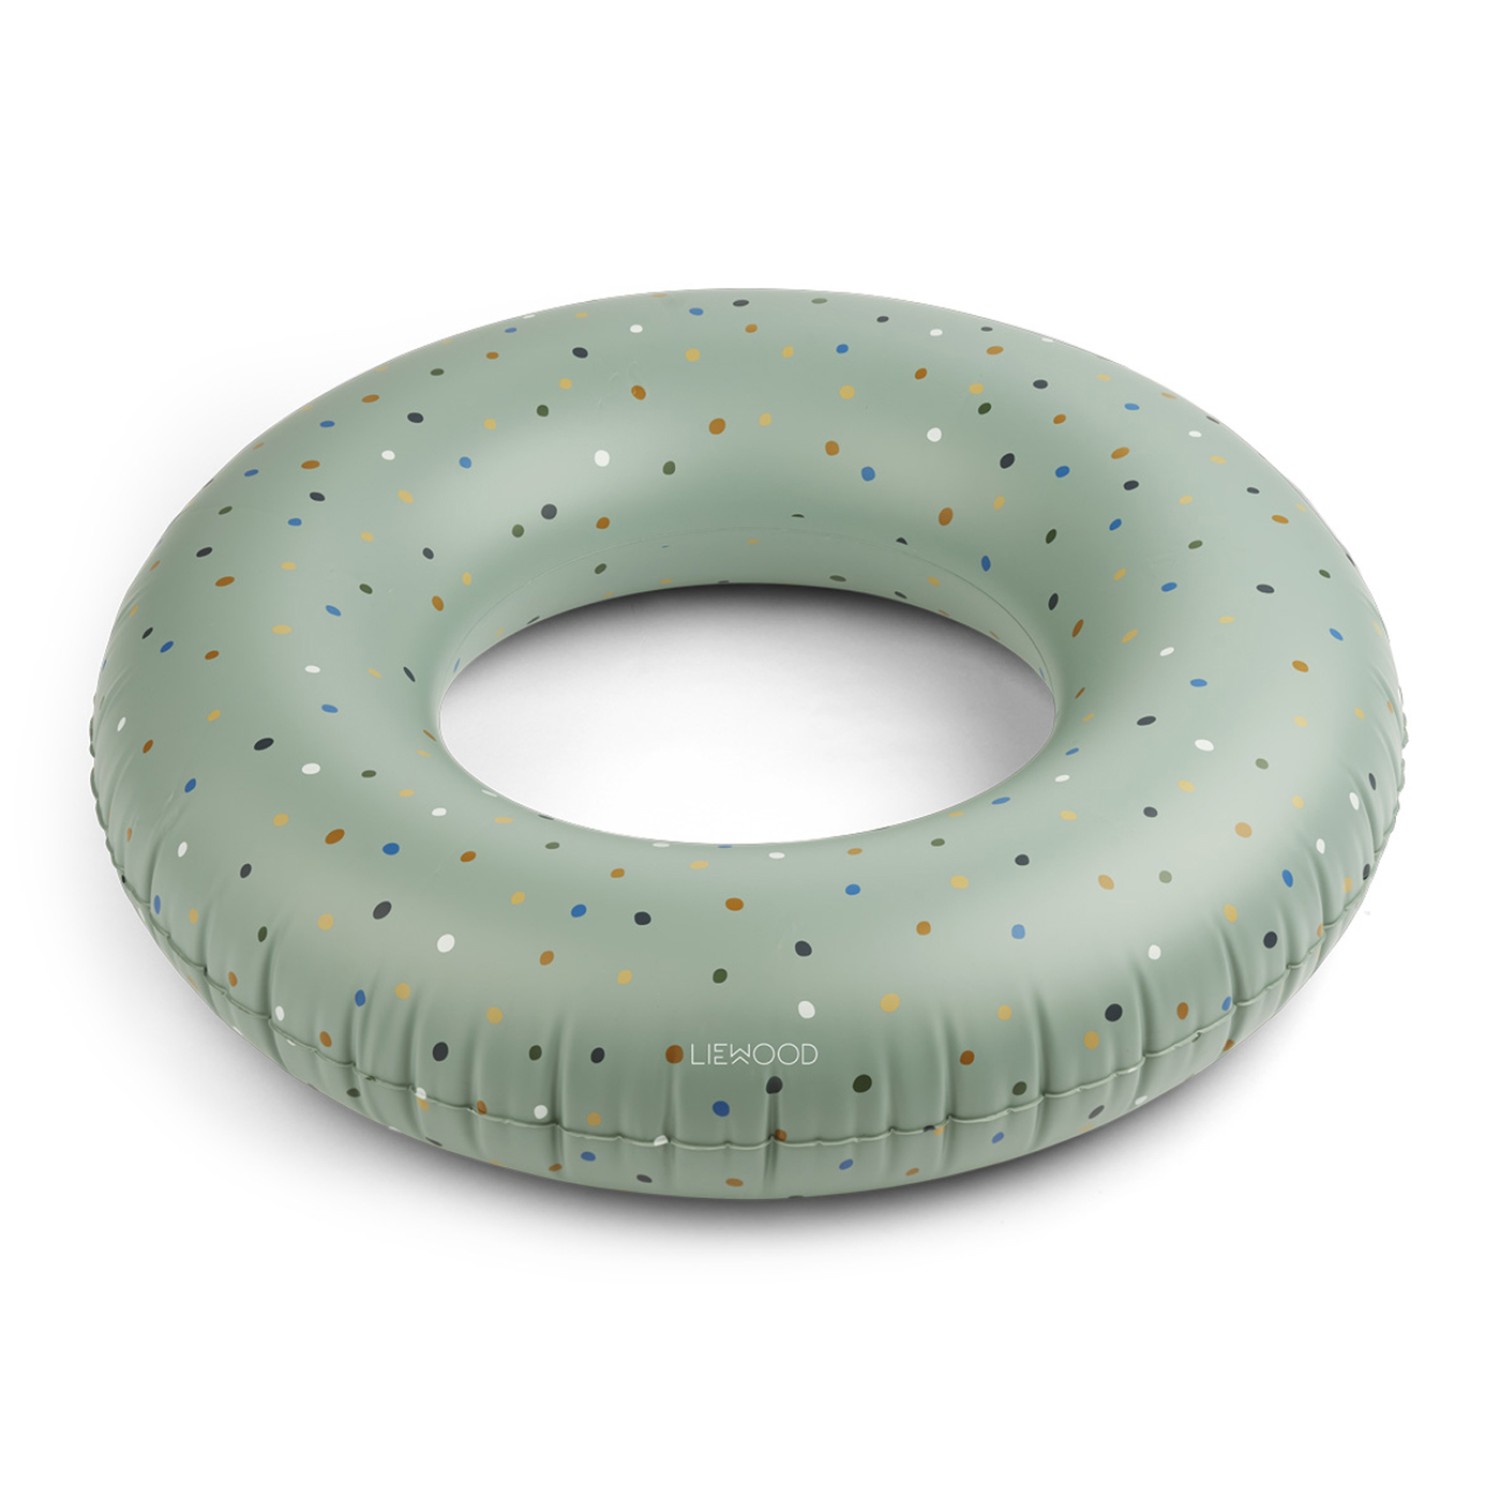 Donna swim ring - Confetti peppermint mix